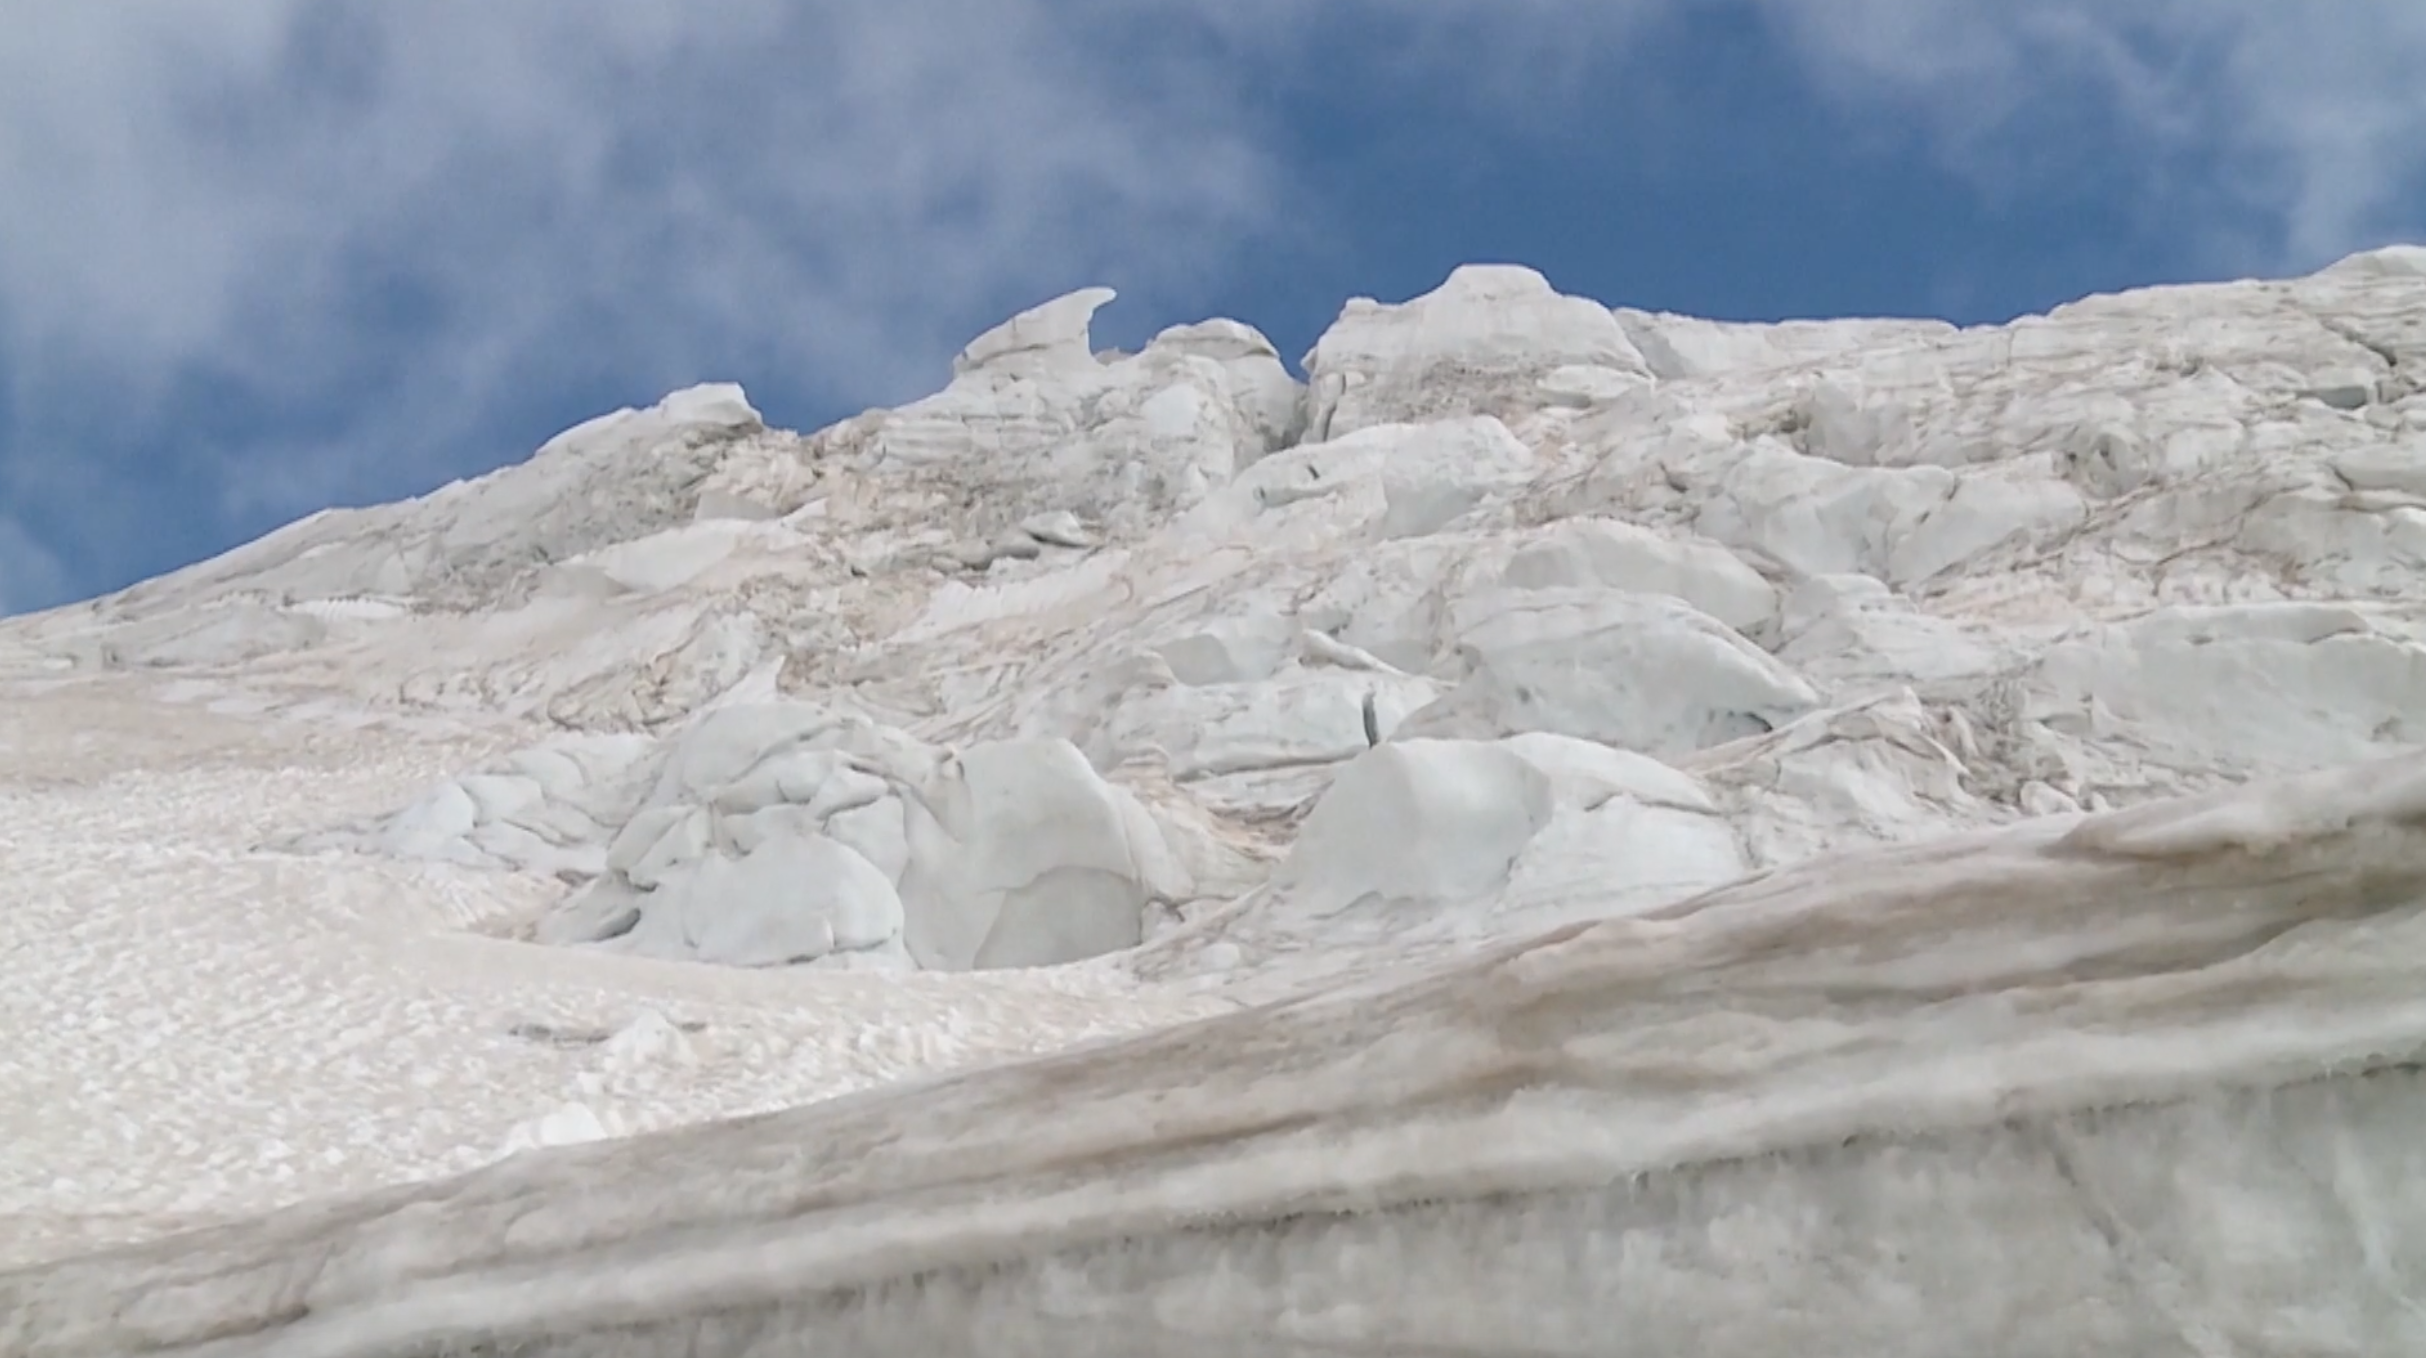 Glaciers in Zermatt, Switzerland. /CCTV